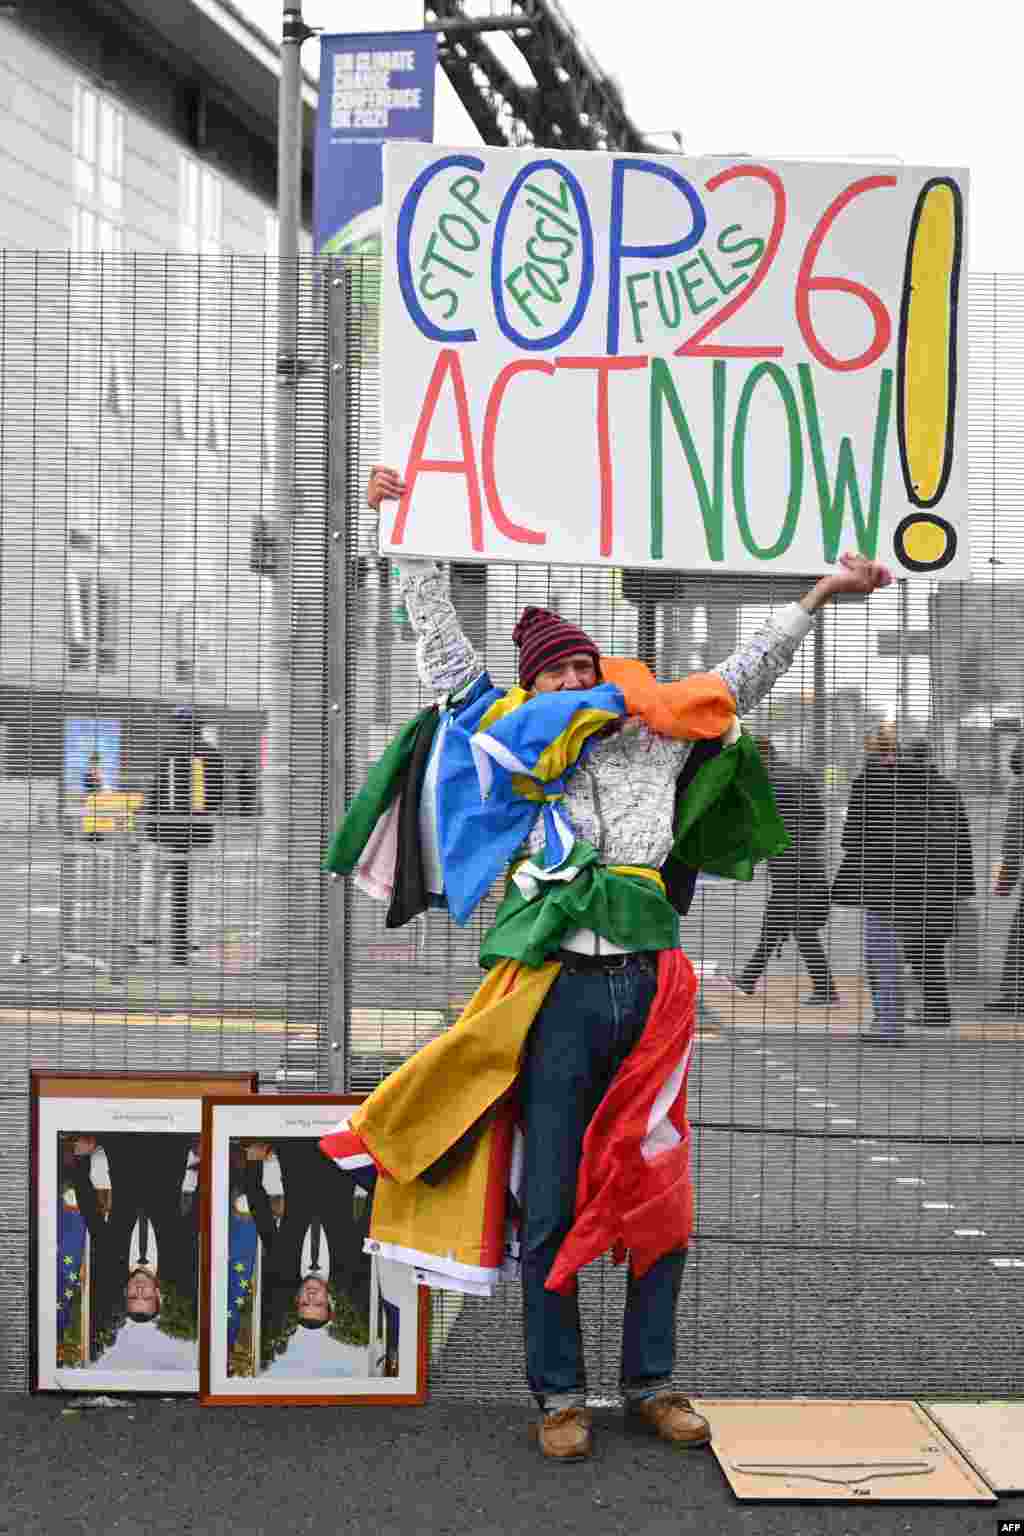 Jean-Baptiste Redde, vagy ahogy sokan ismerik, Voltuan plakáttal a kezében tüntet a klímaügyi találkozó helyszínén. A francia aktivista a fosszilis energiahordozók mellőzésére és azonnali intézkedésekre szólít fel